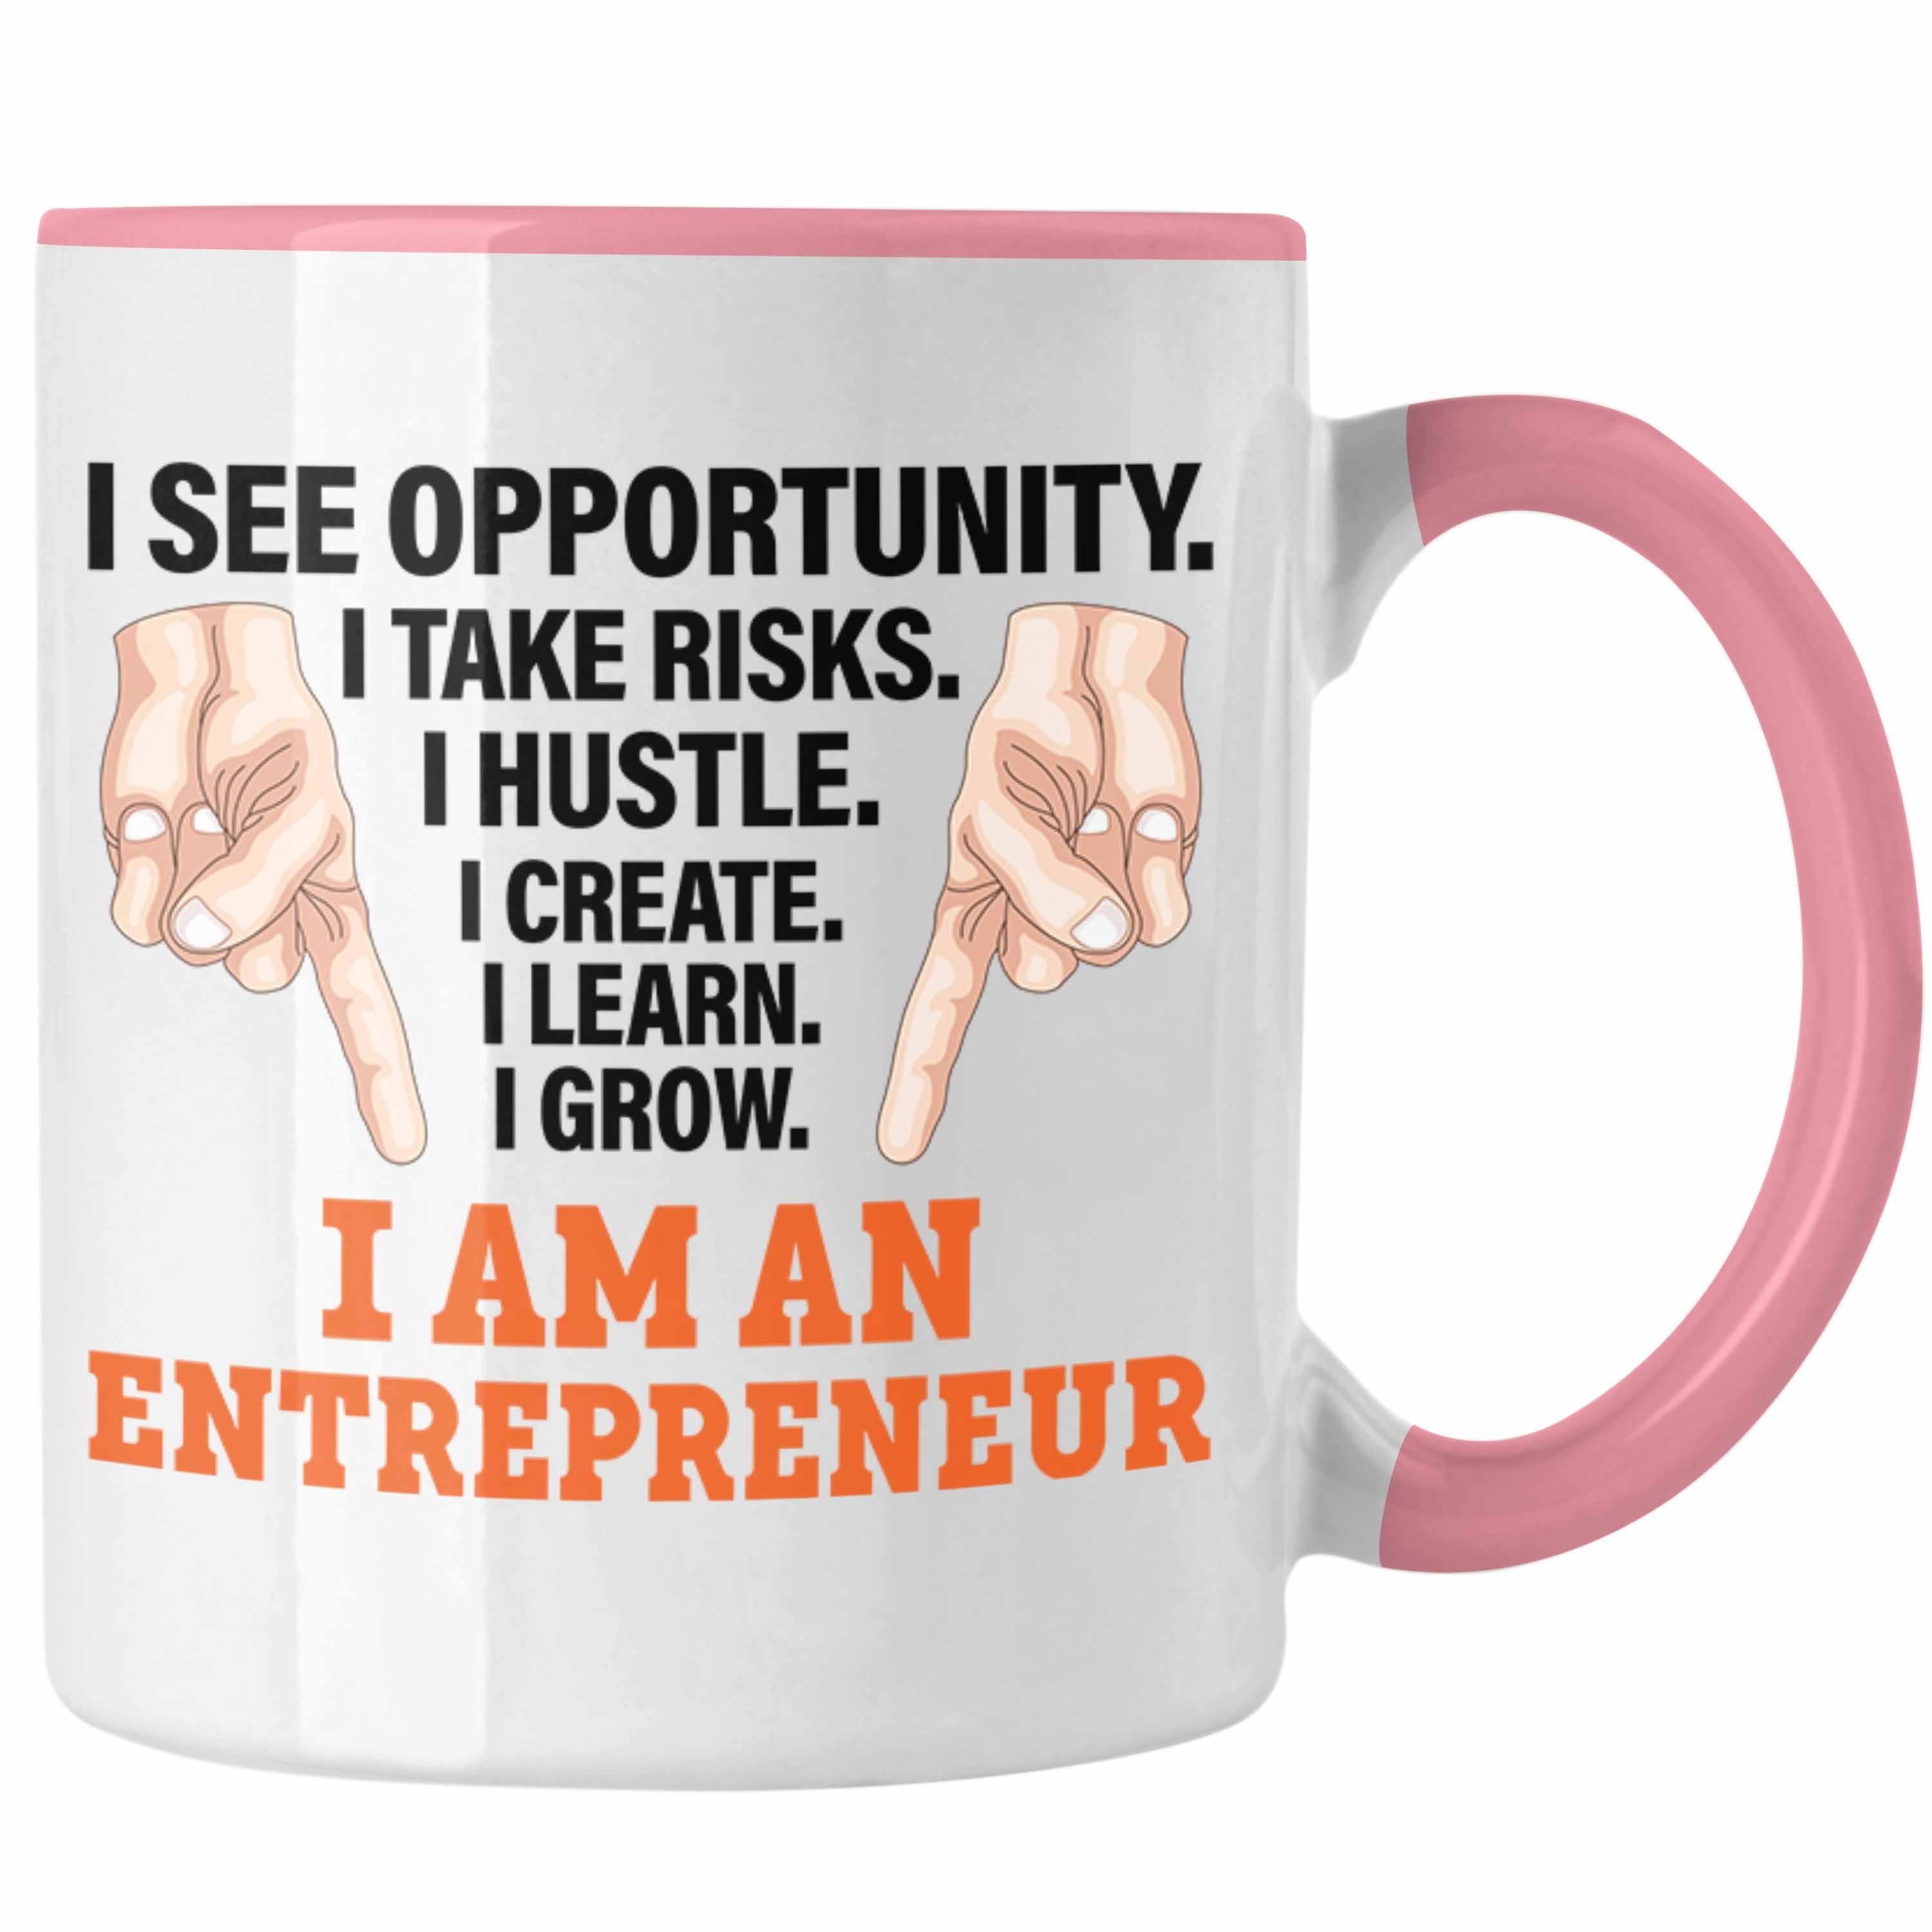 Trendation Spruch Entrepreneurship - Tasse Tasse Selbstständig Idee Motivation Geschenk Entrepreneur Trendation Rosa